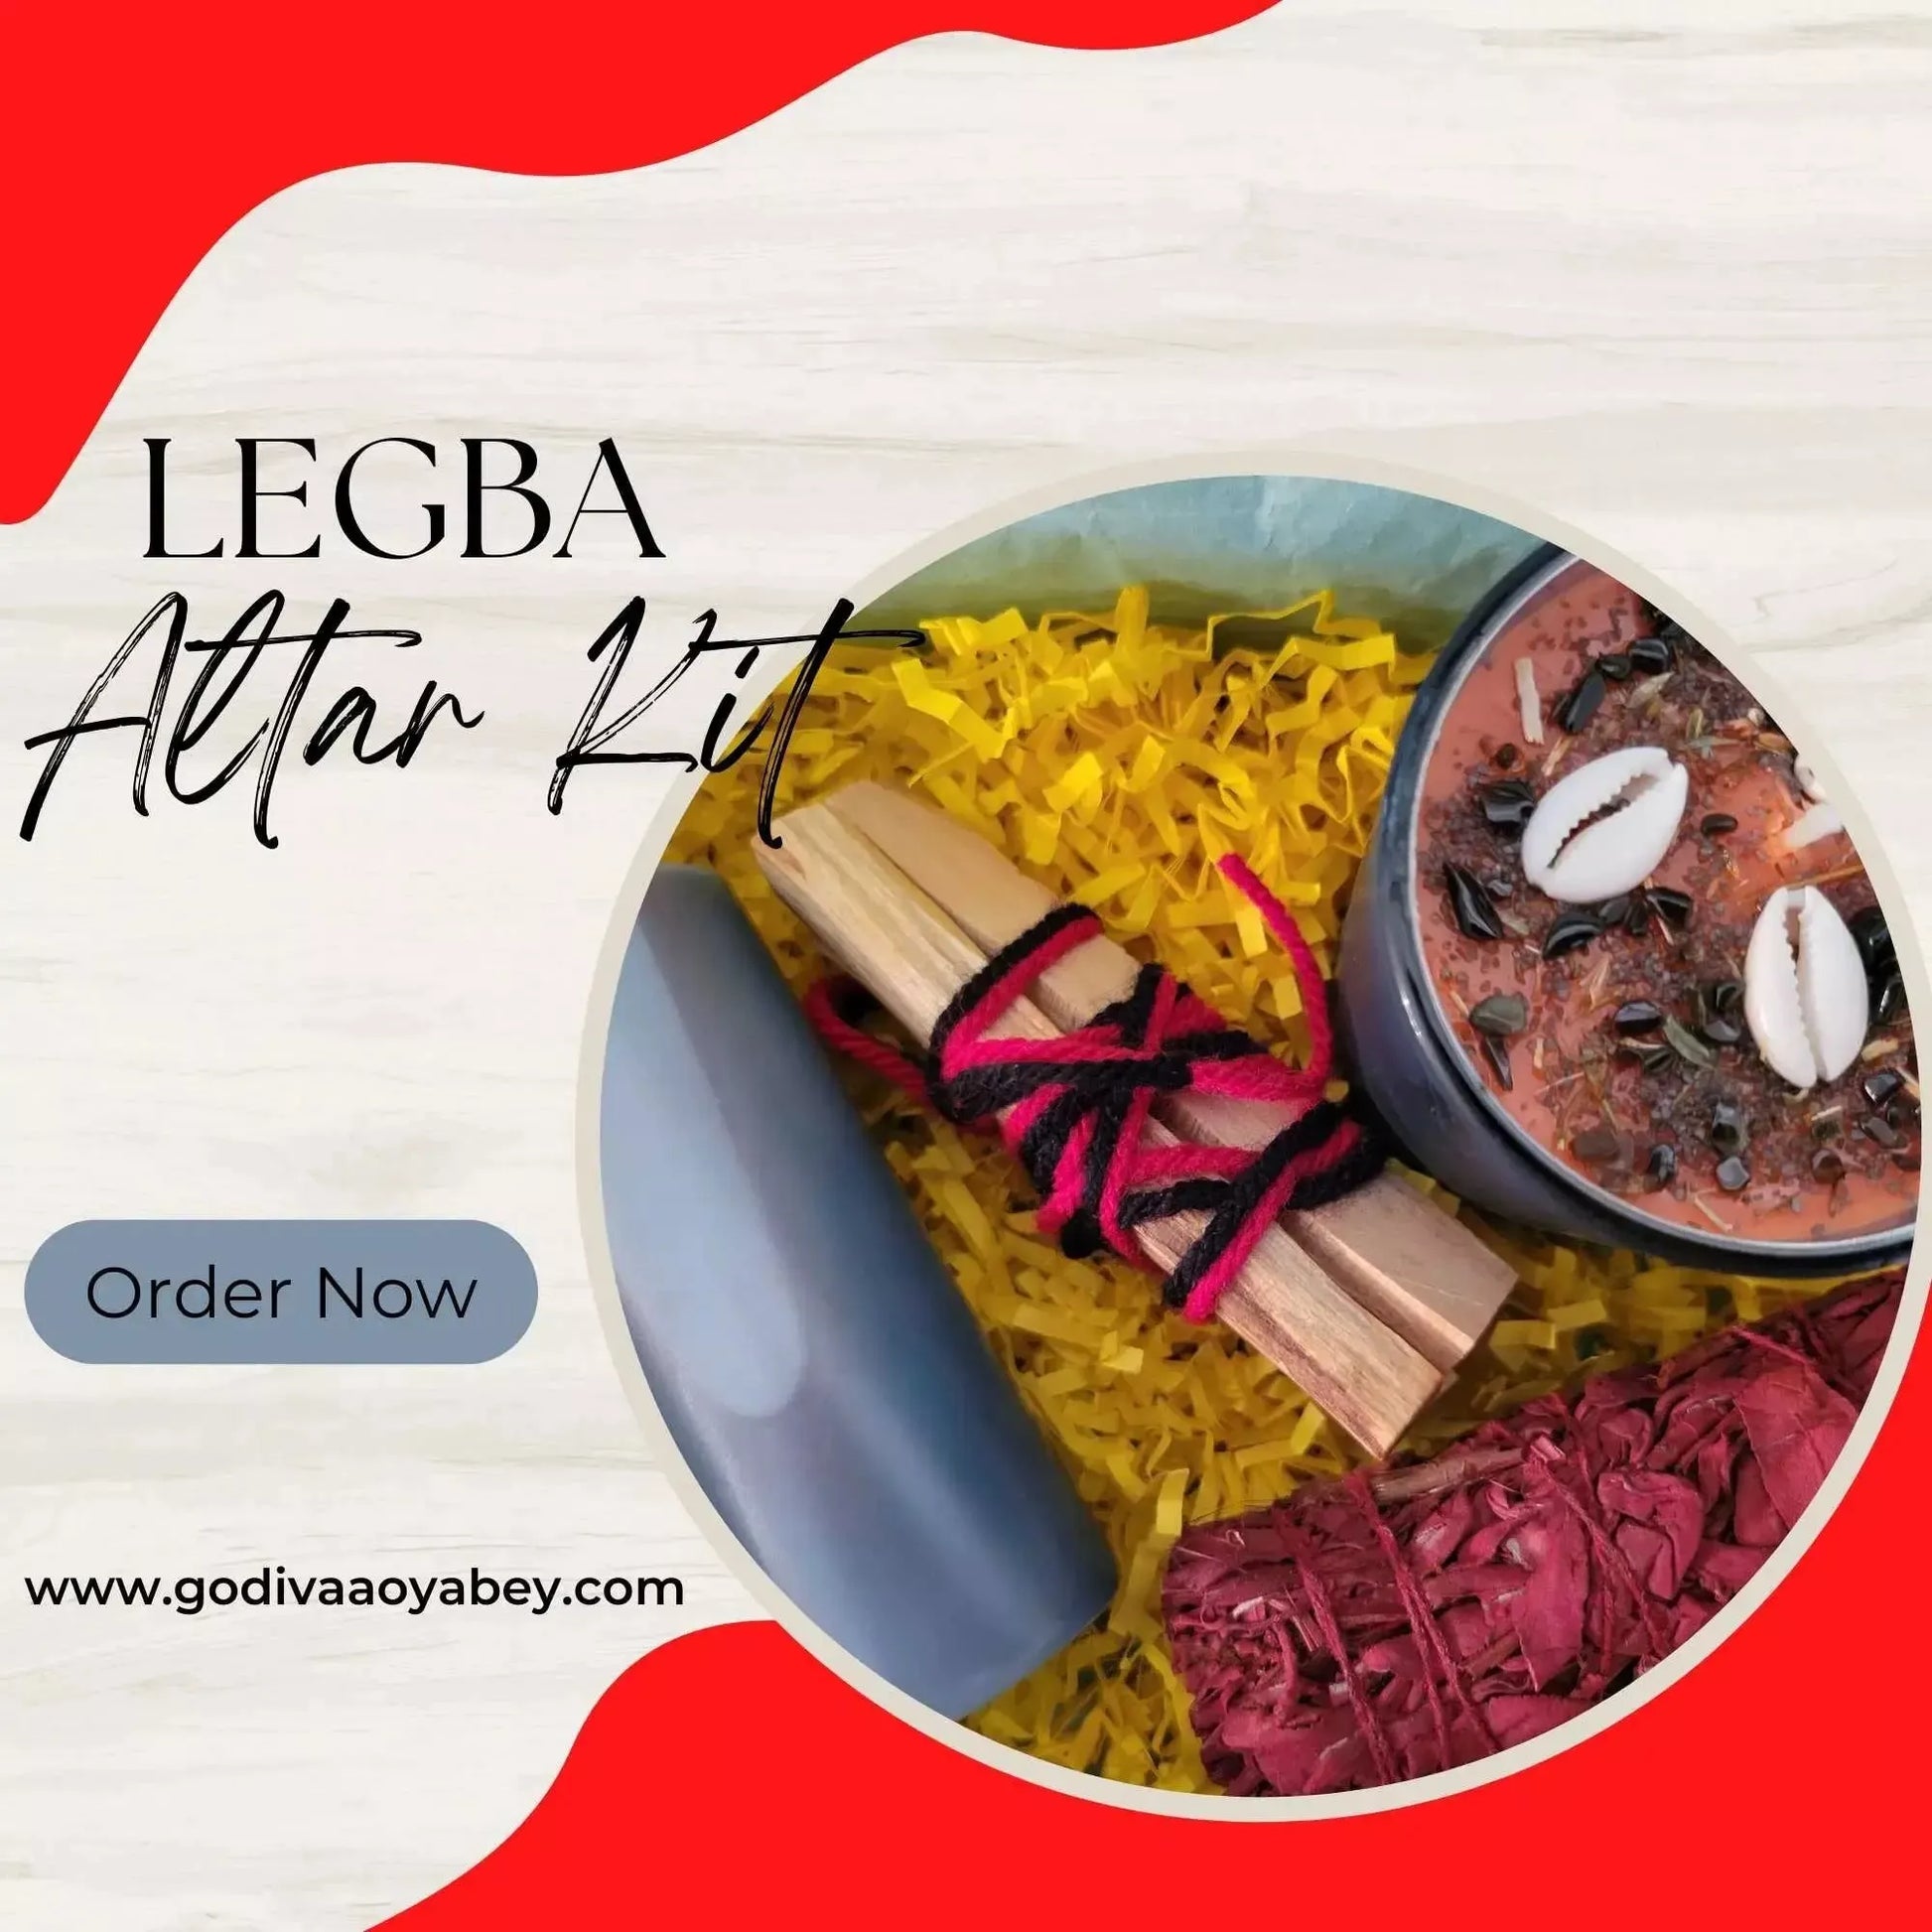 Legba Altar Kit - Godiva Oya Bey